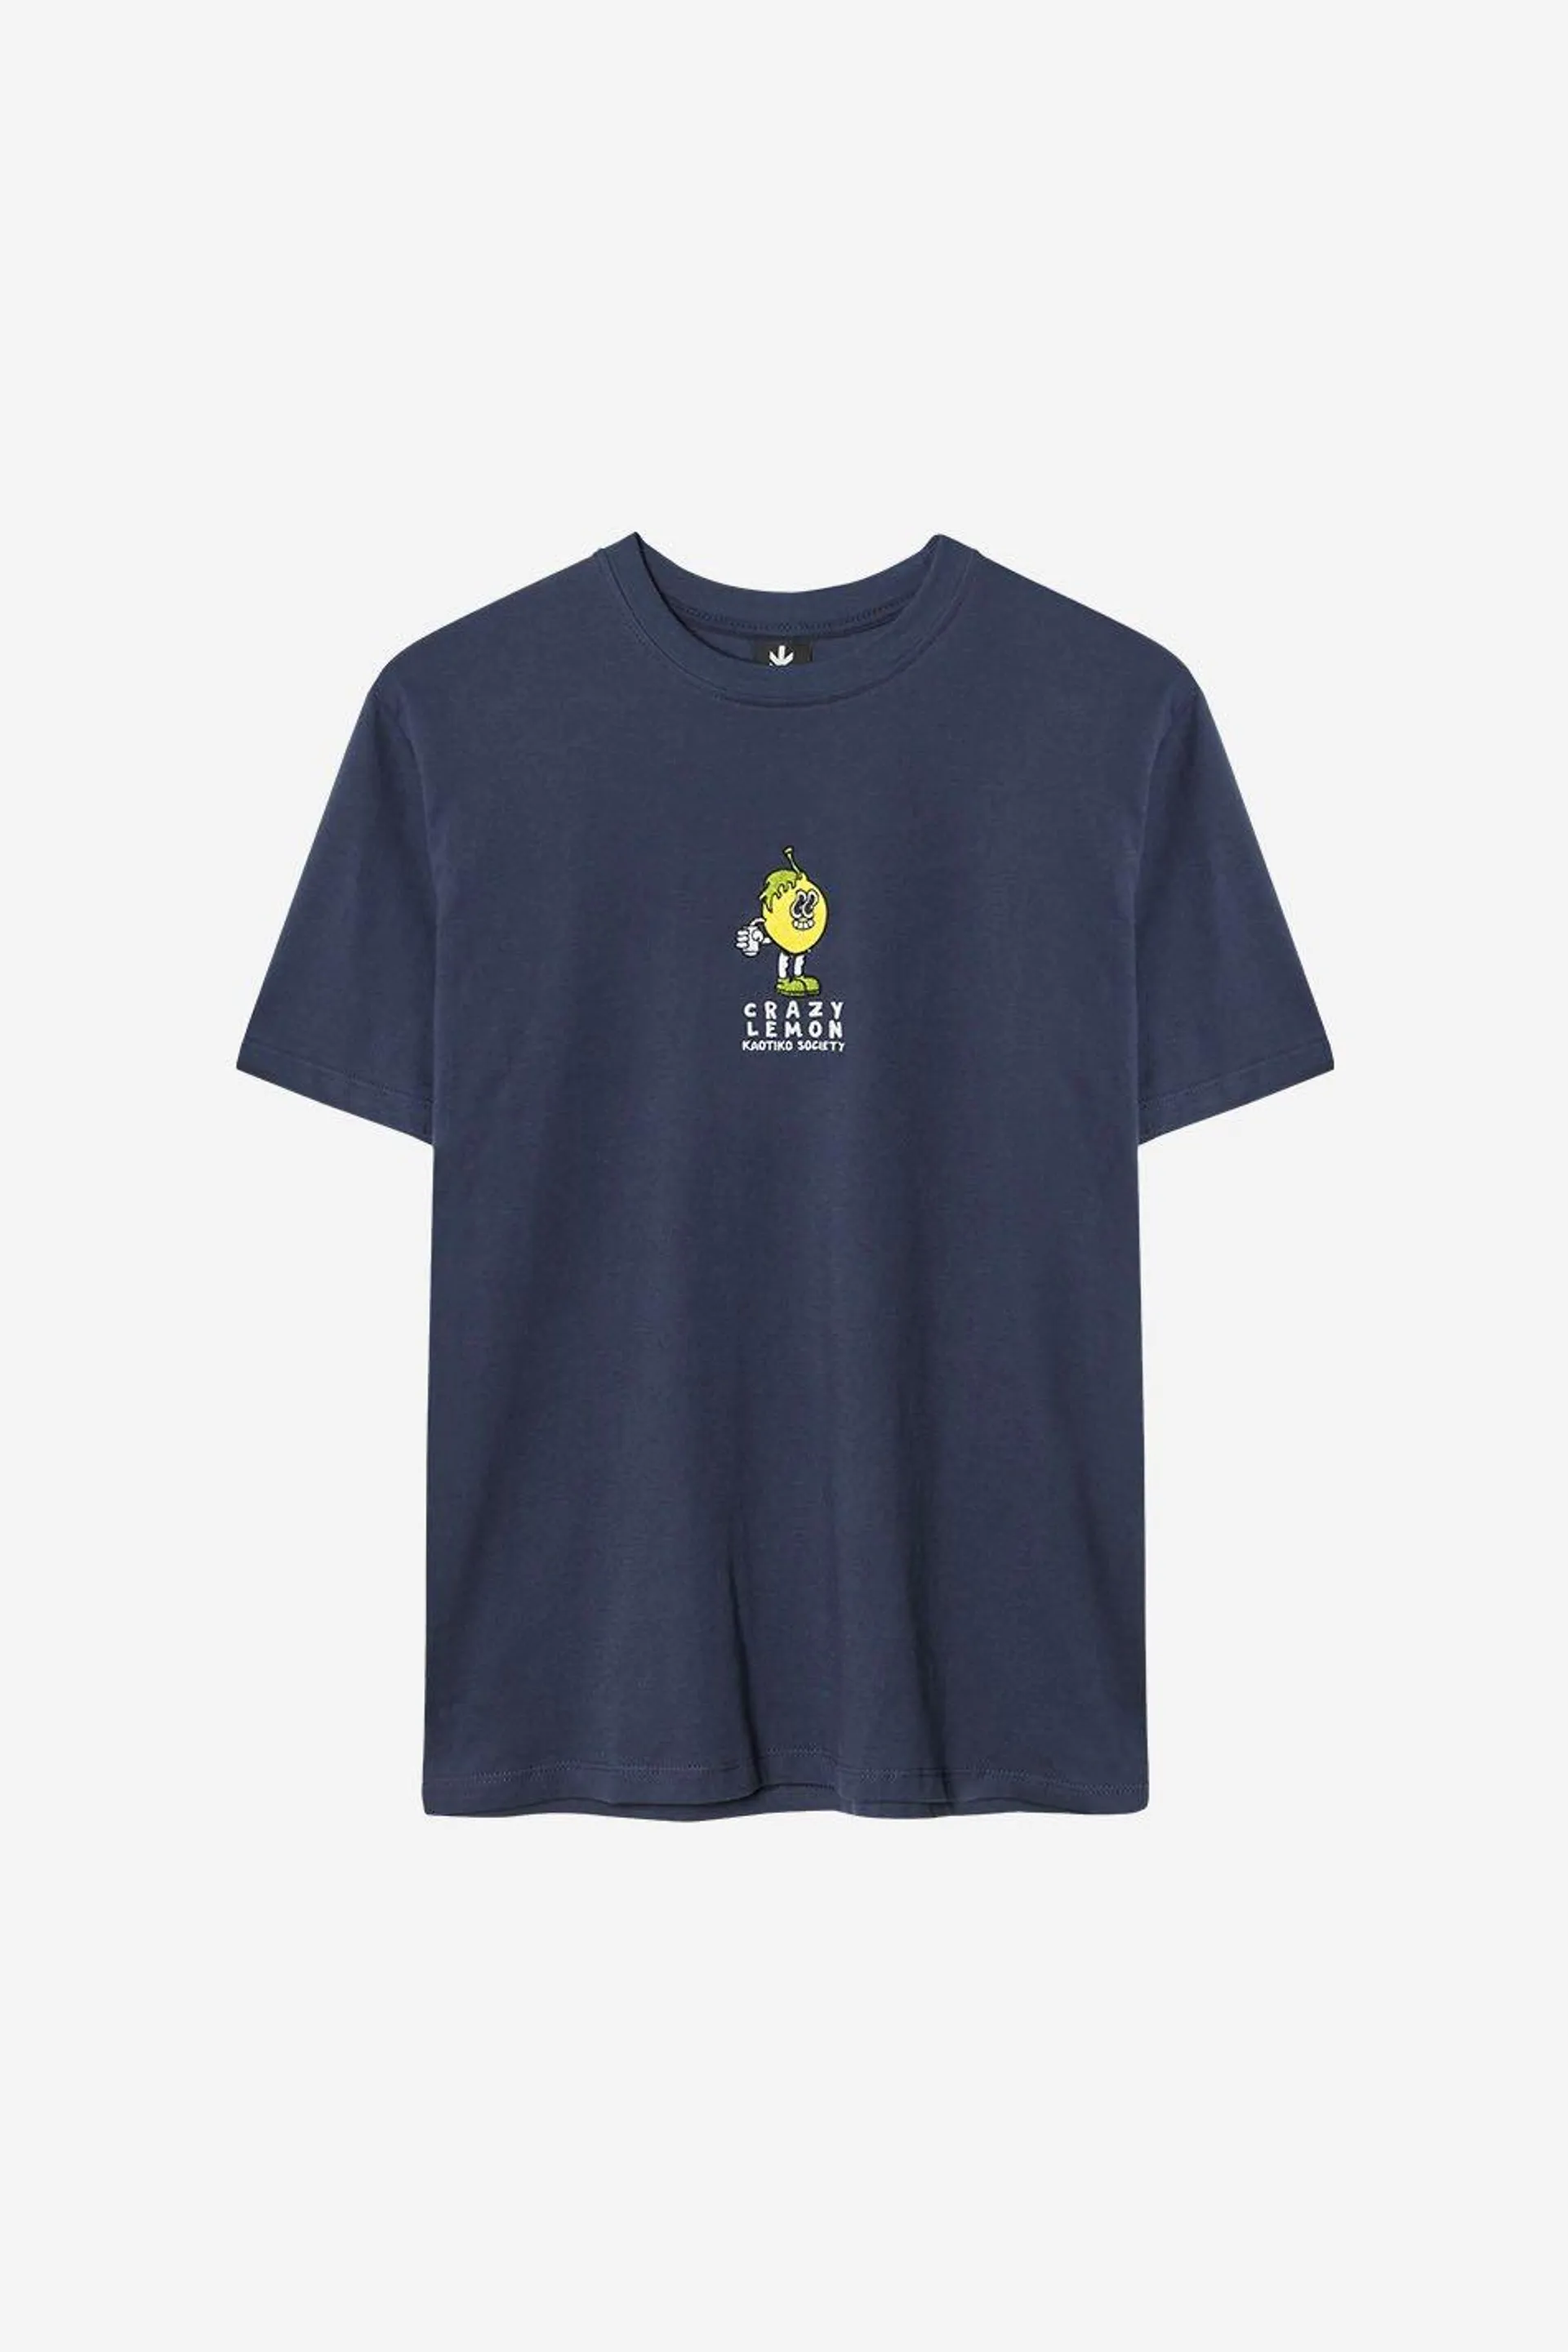 Camiseta Crazy Lemon Navy